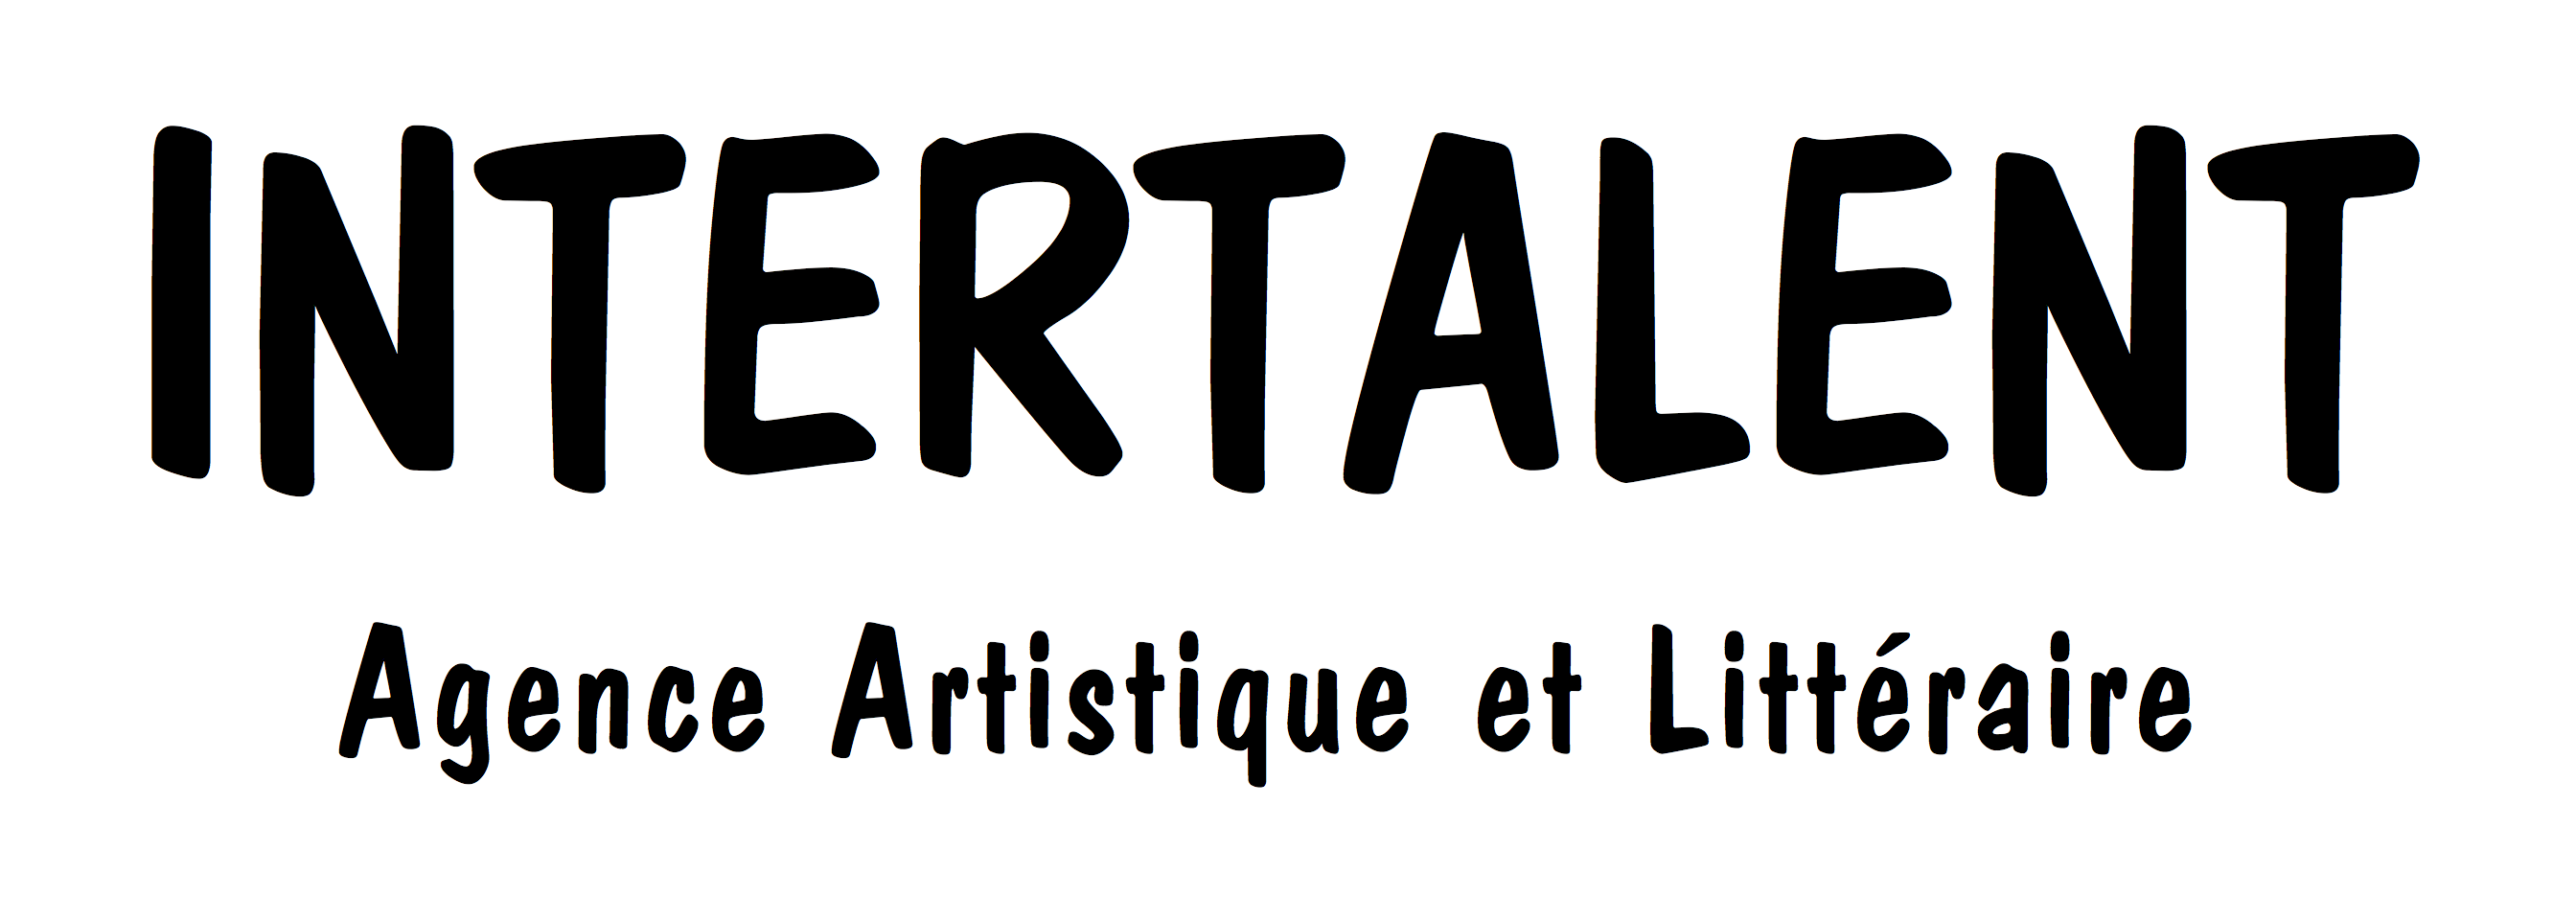 INTERTALENT - Agence Artistique et Littéraire